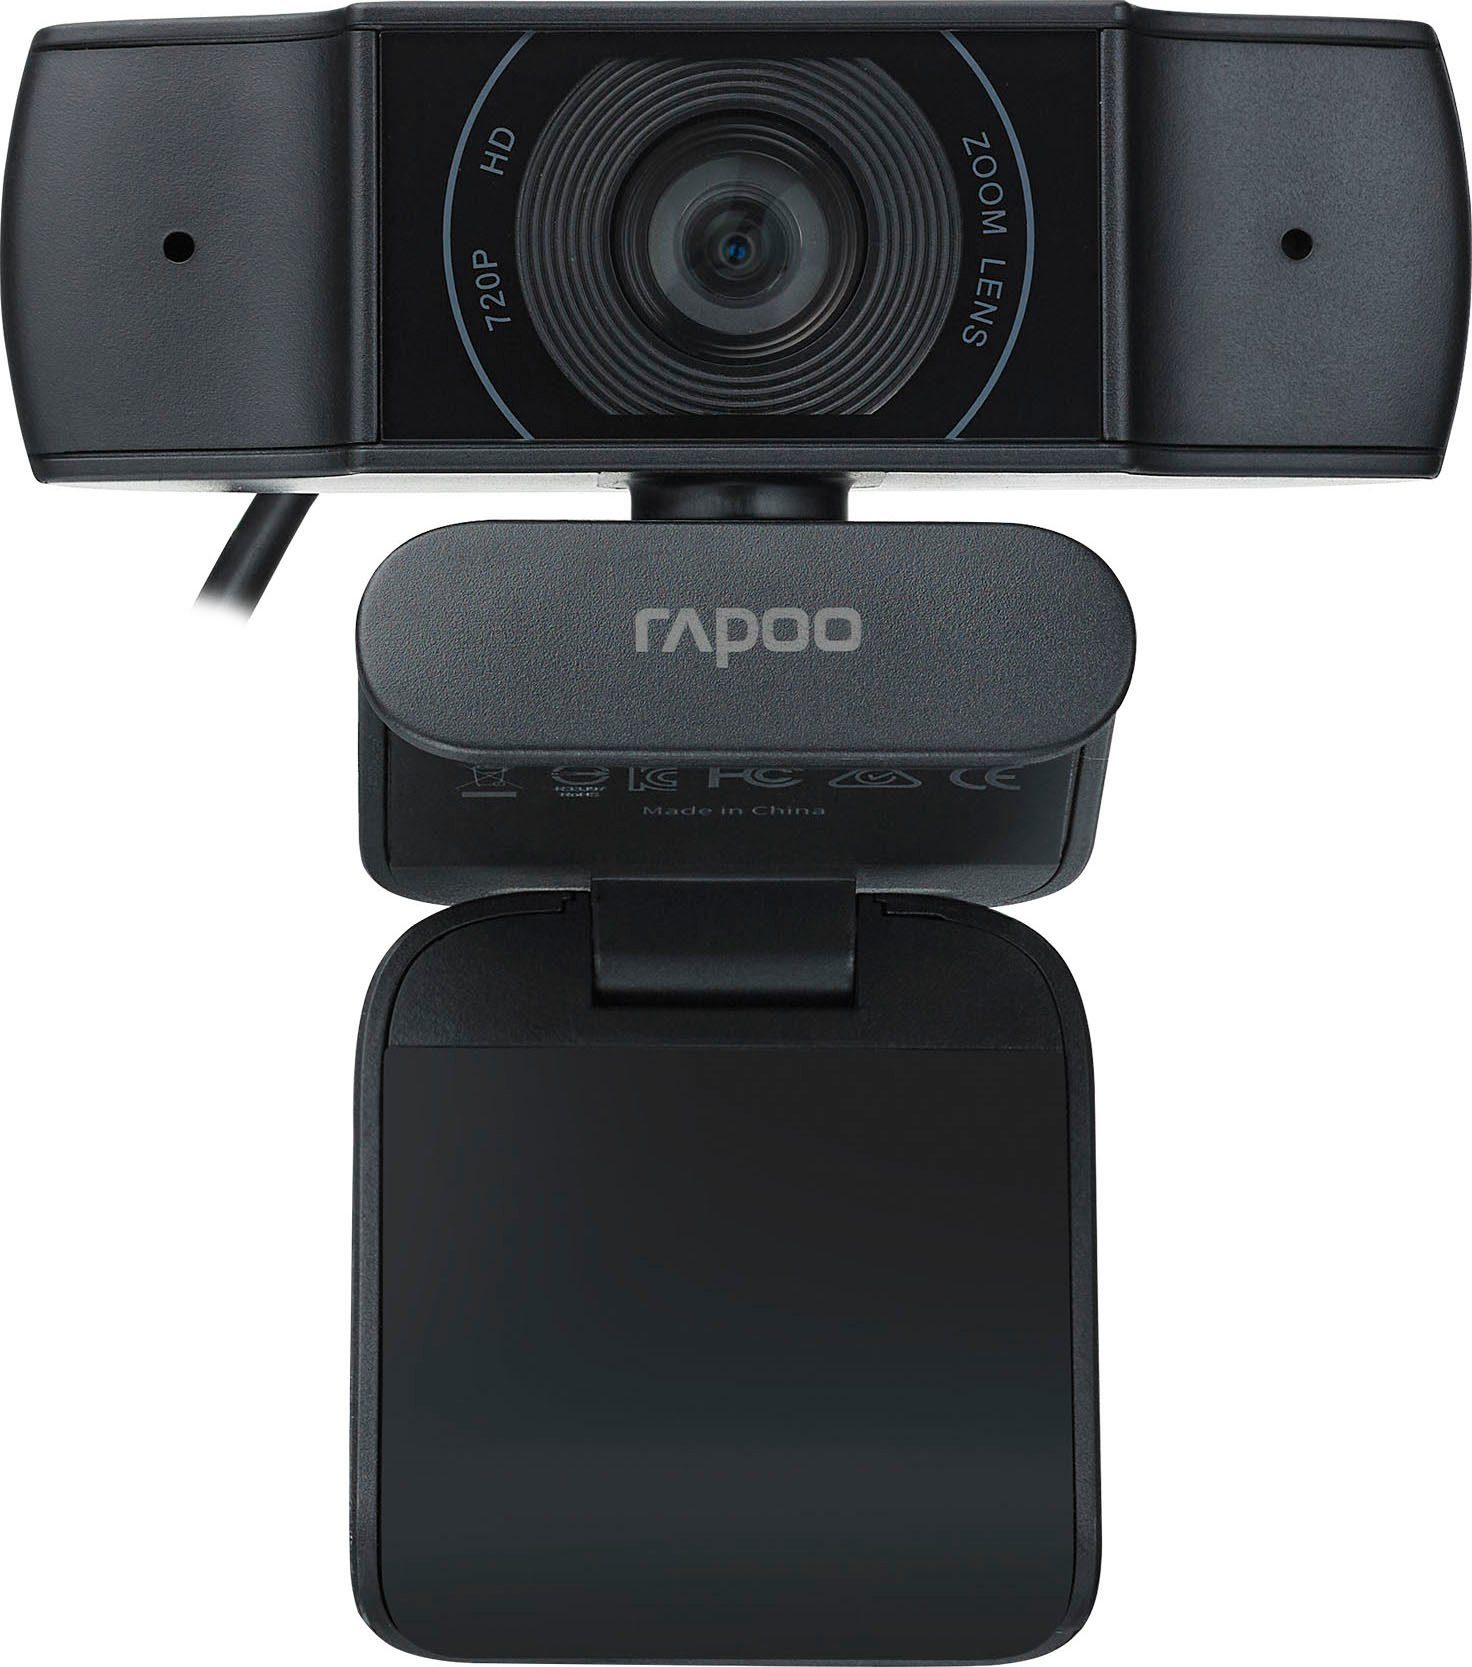 Rapoo XW170 HD Webcam 720p (HD) Webcam